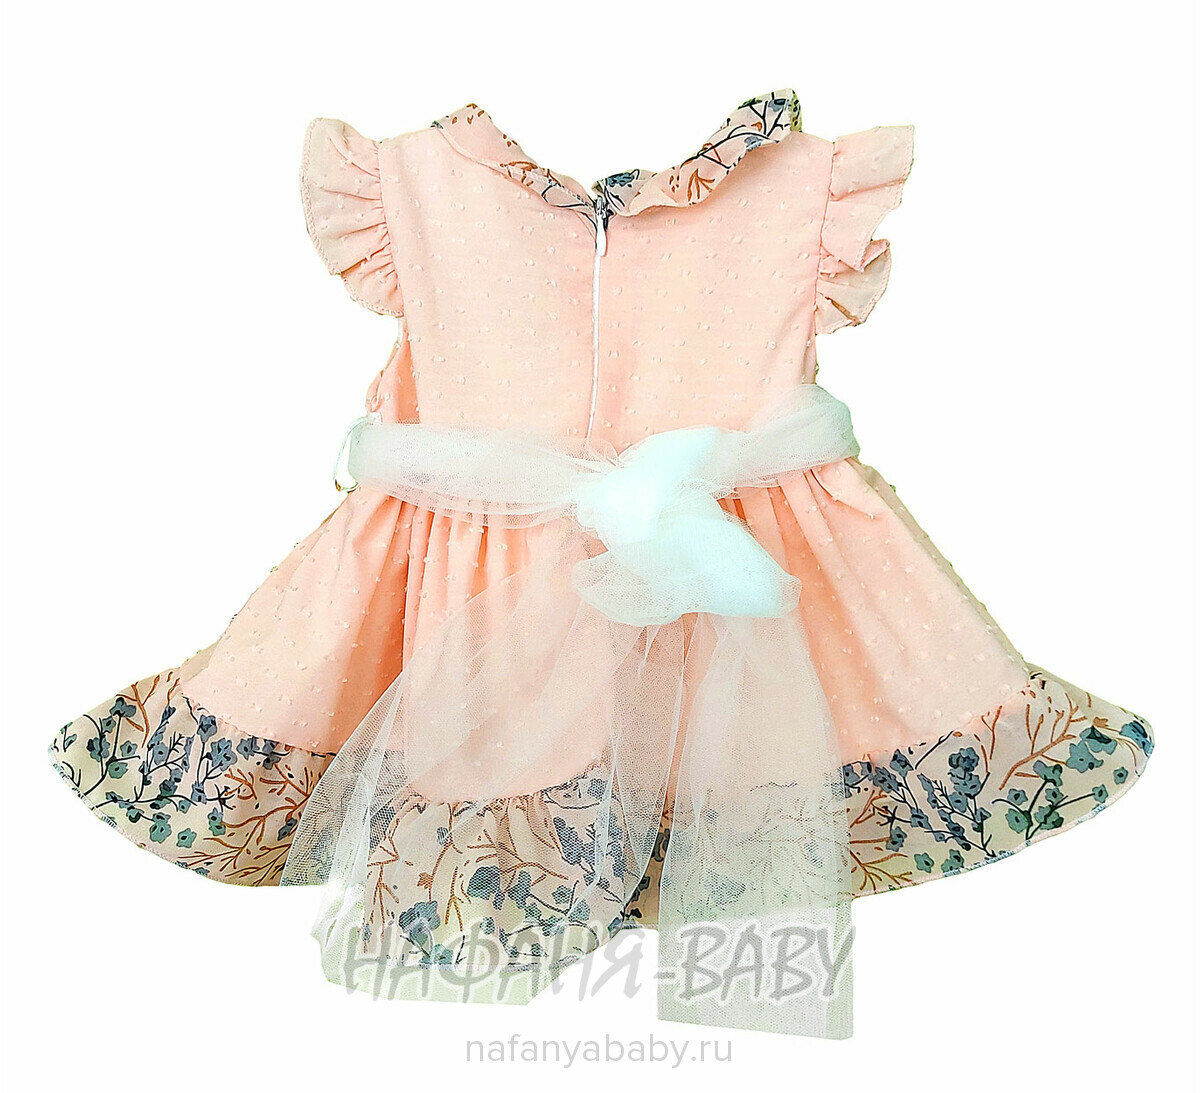 Детское нарядное платье Happy арт. 10047, 6 мес, цвет персиковый, оптом Турция